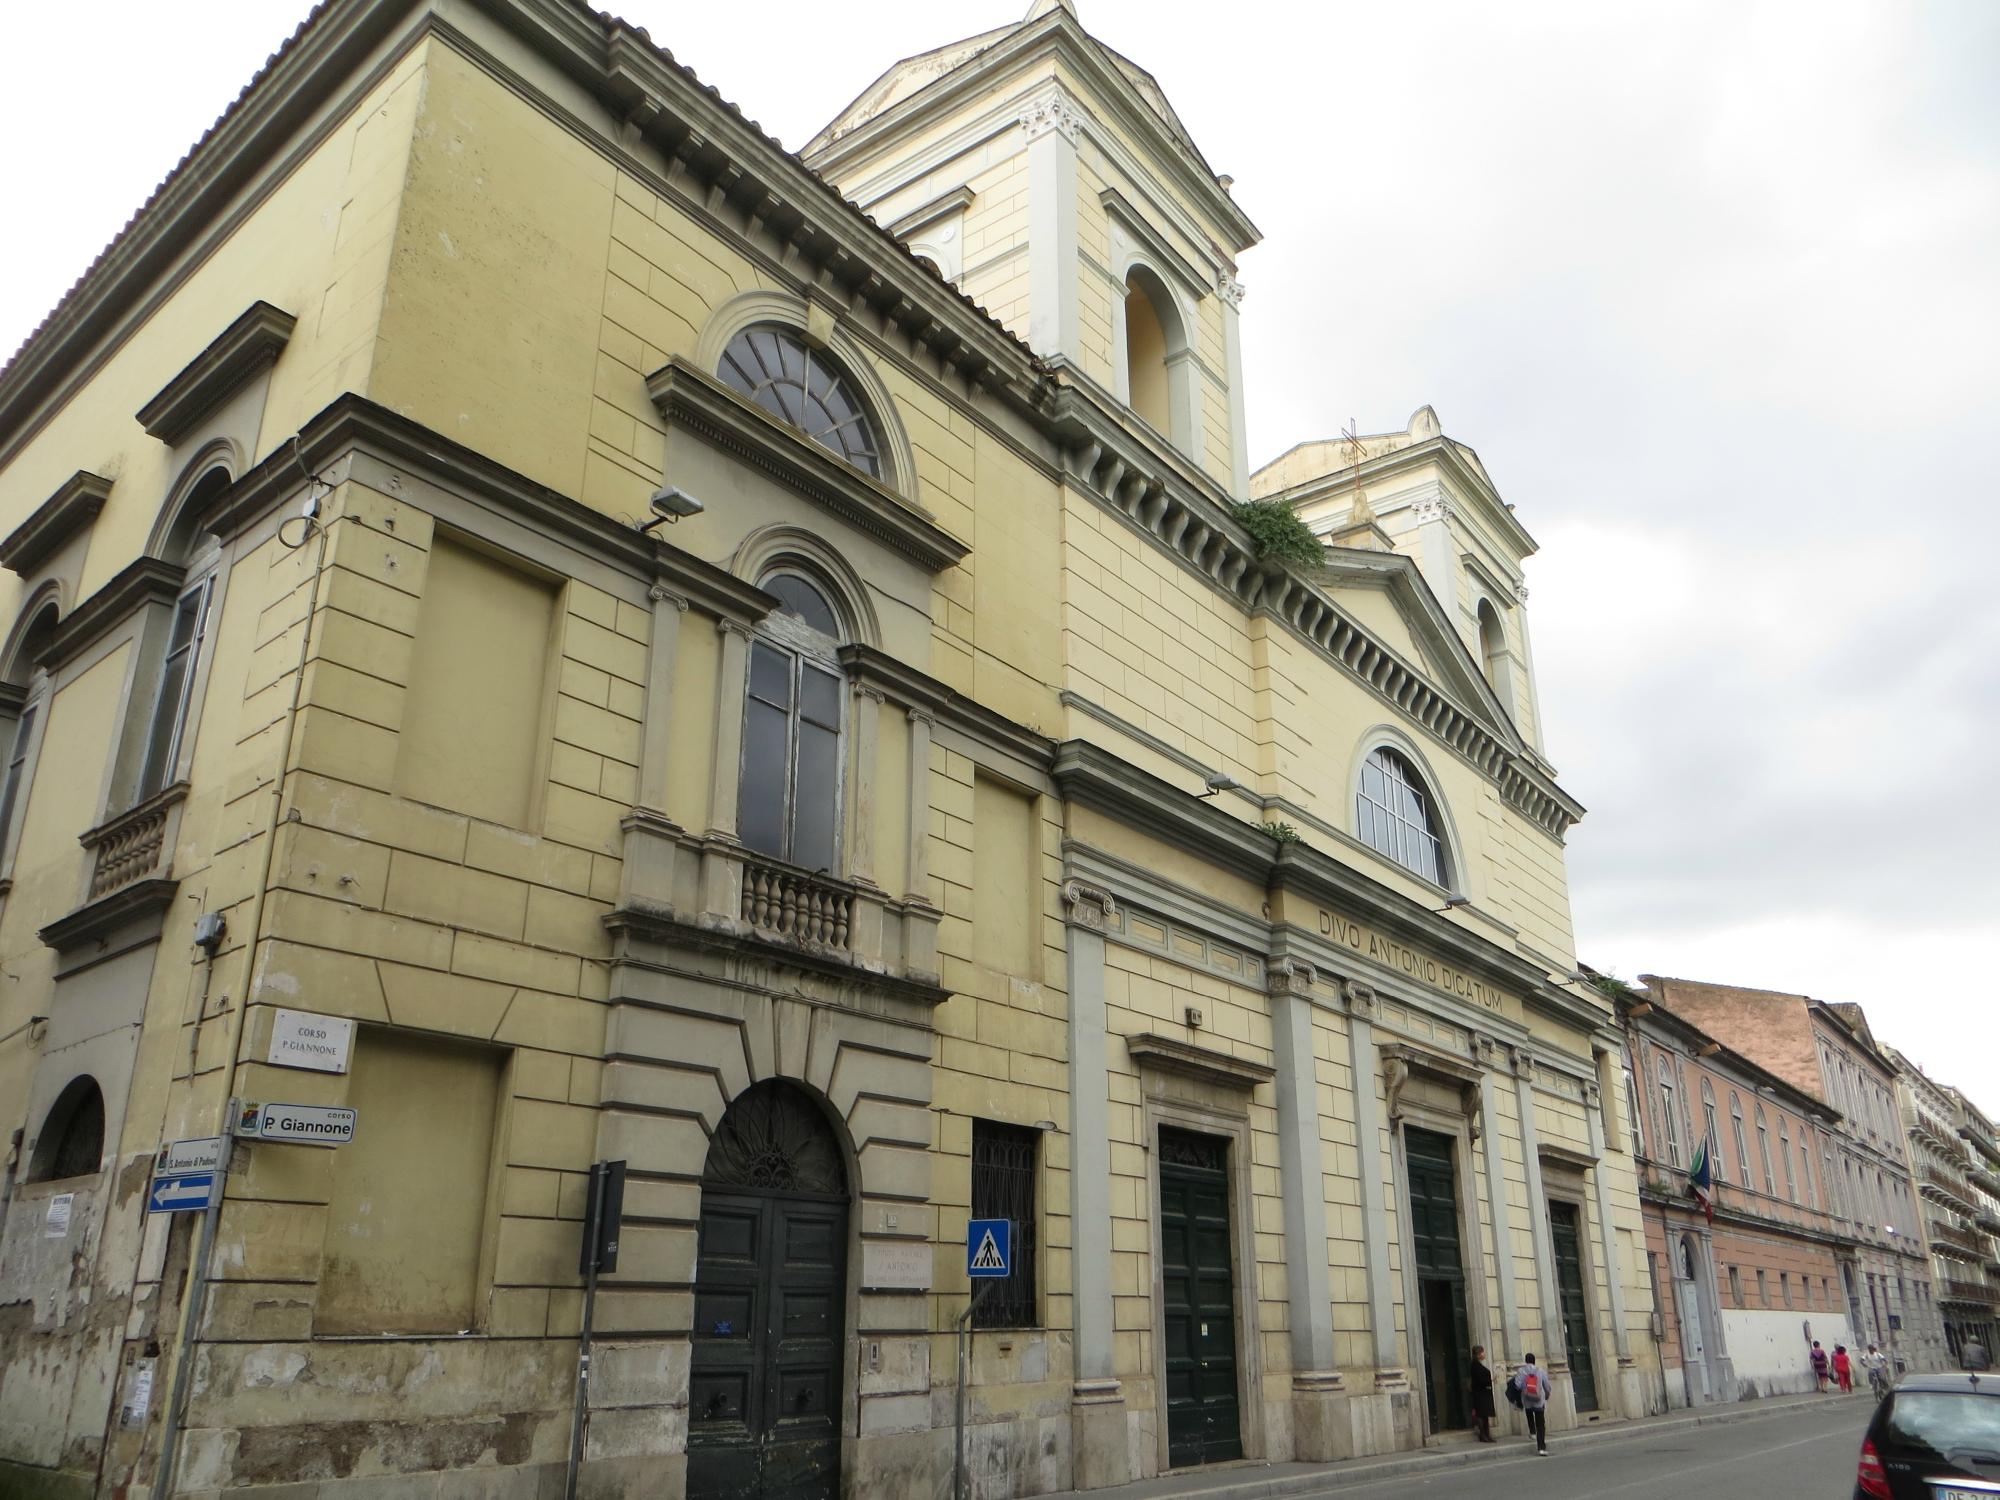 Chiesa di Sant'Antonio di Padova